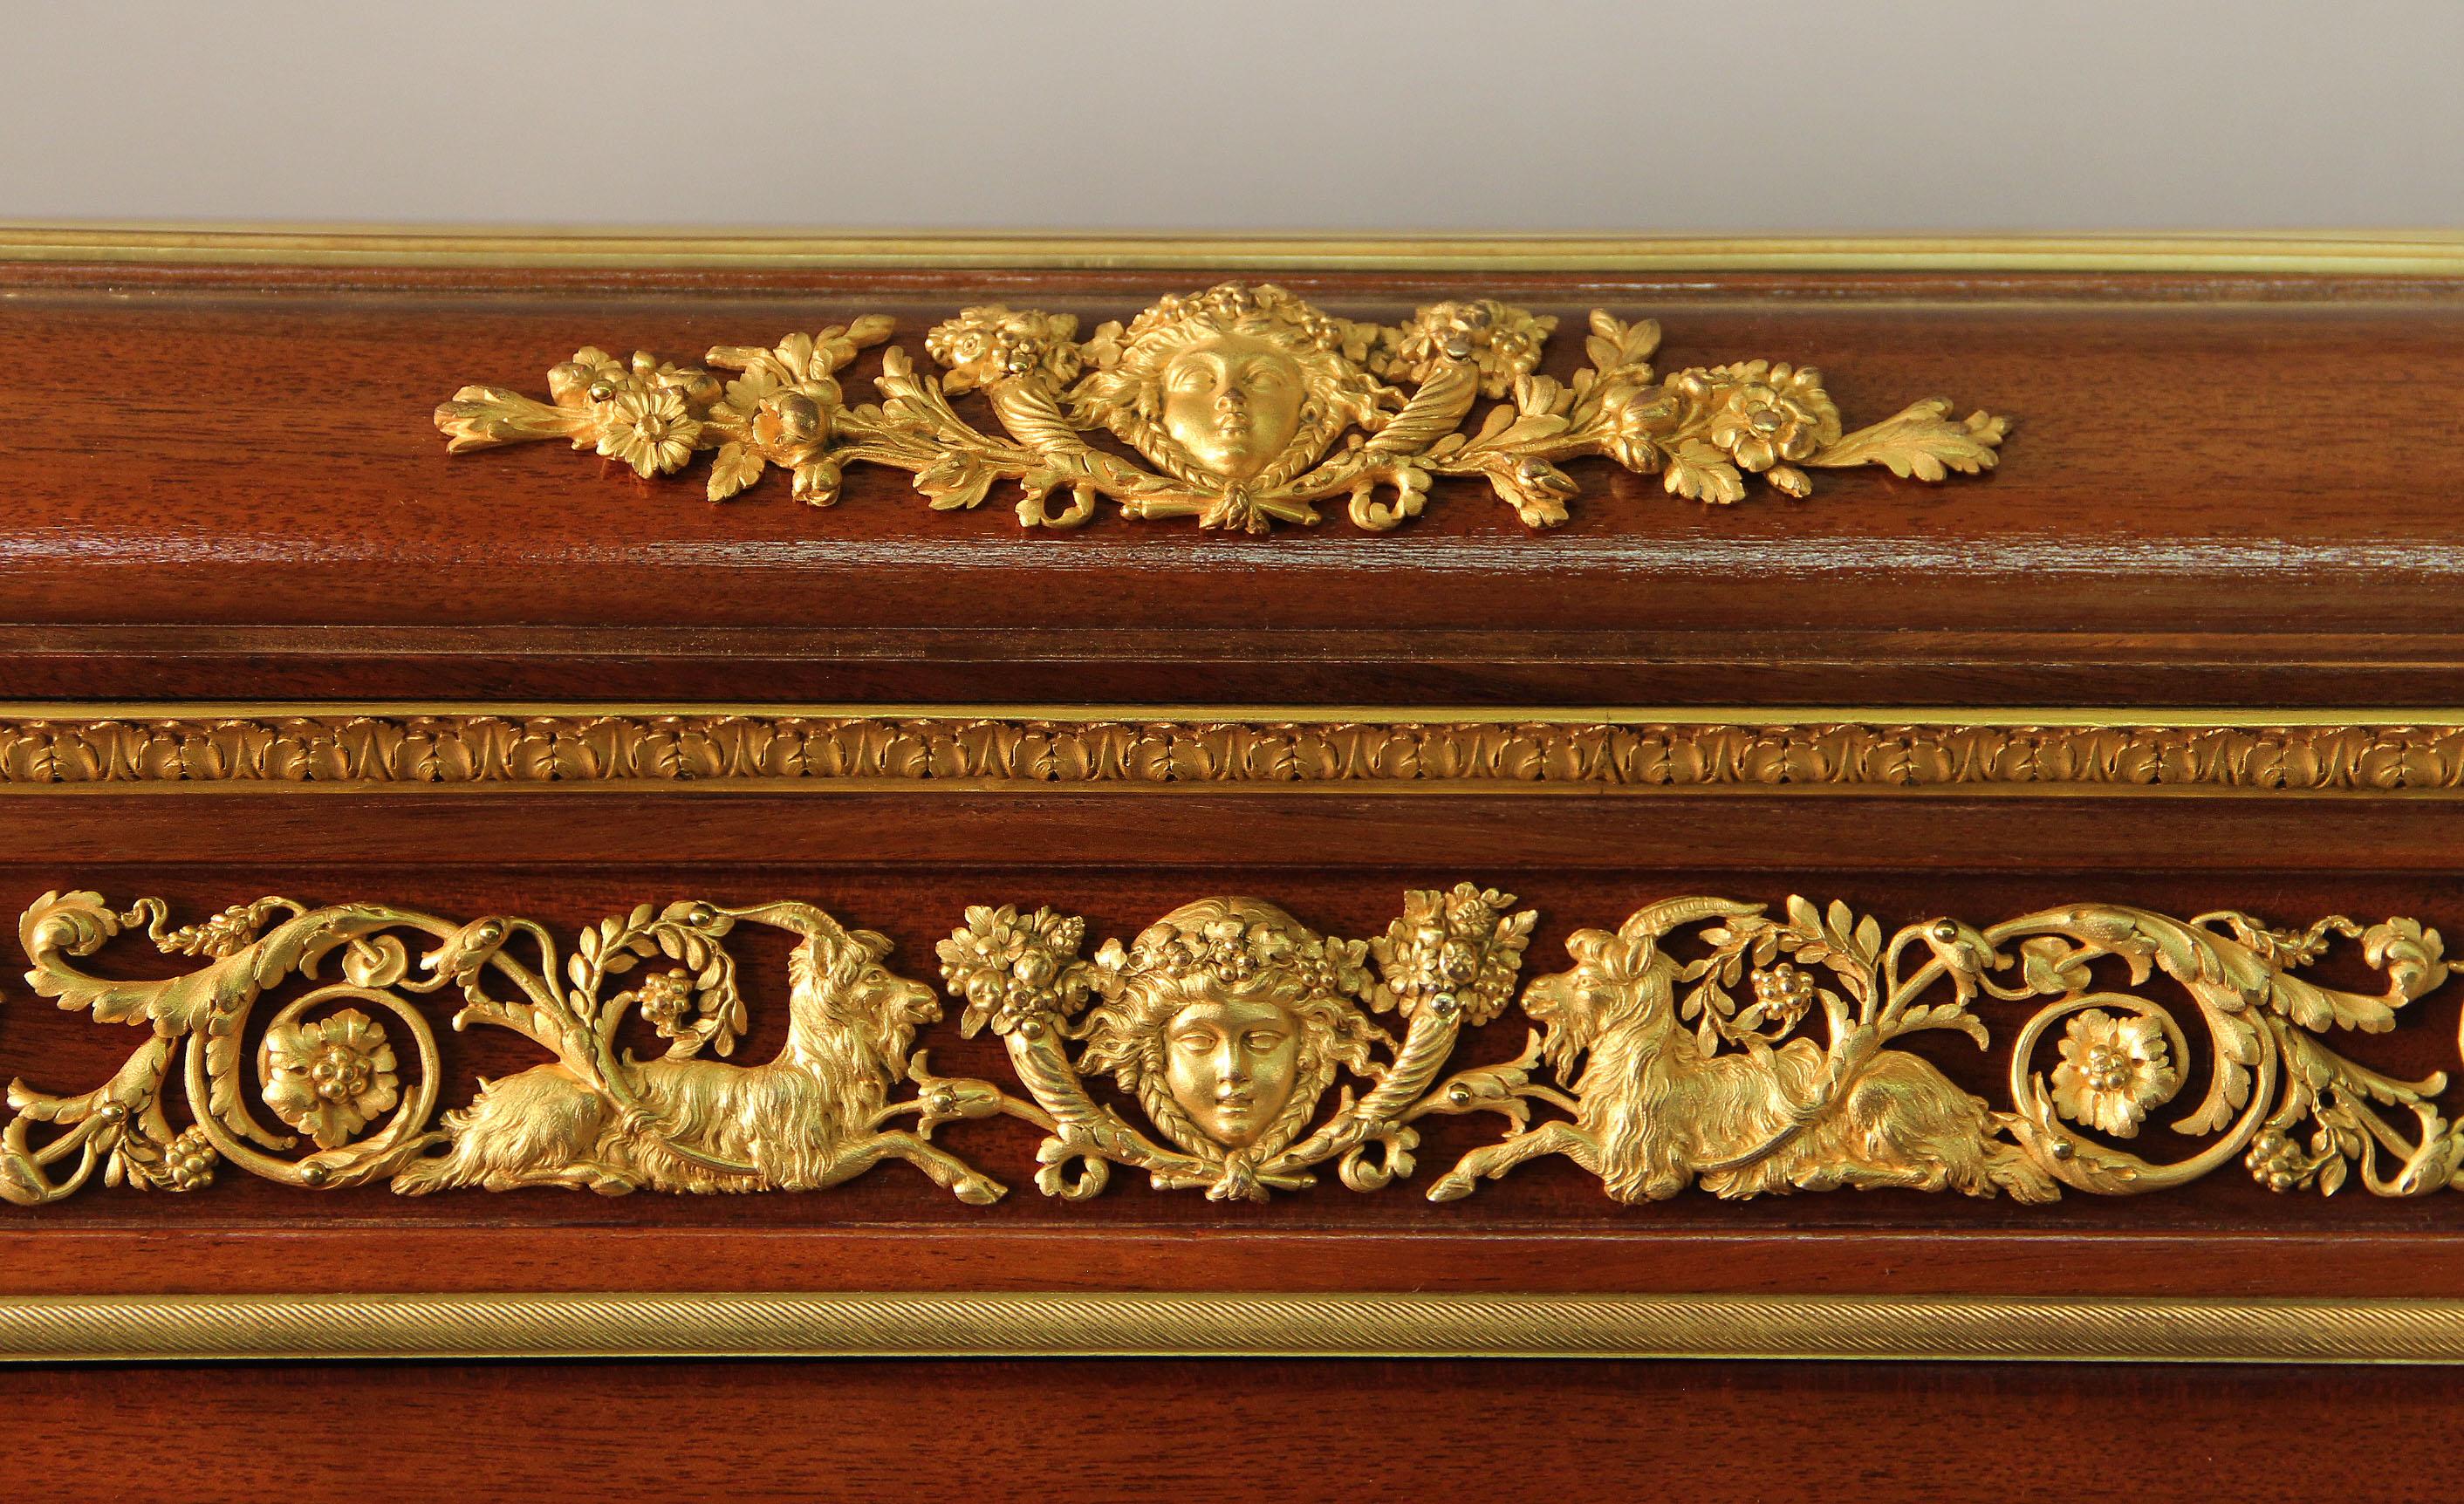 Eine fantastische Qualität späten 19. Jahrhundert Louis XVI-Stil vergoldeter Bronze montiert Vernis Martin Vitrine Schrank

Von François Linke

Eine durchbrochene Bronzegalerie über einer Bronzemontierung einer weiblichen Maske, umrahmt von